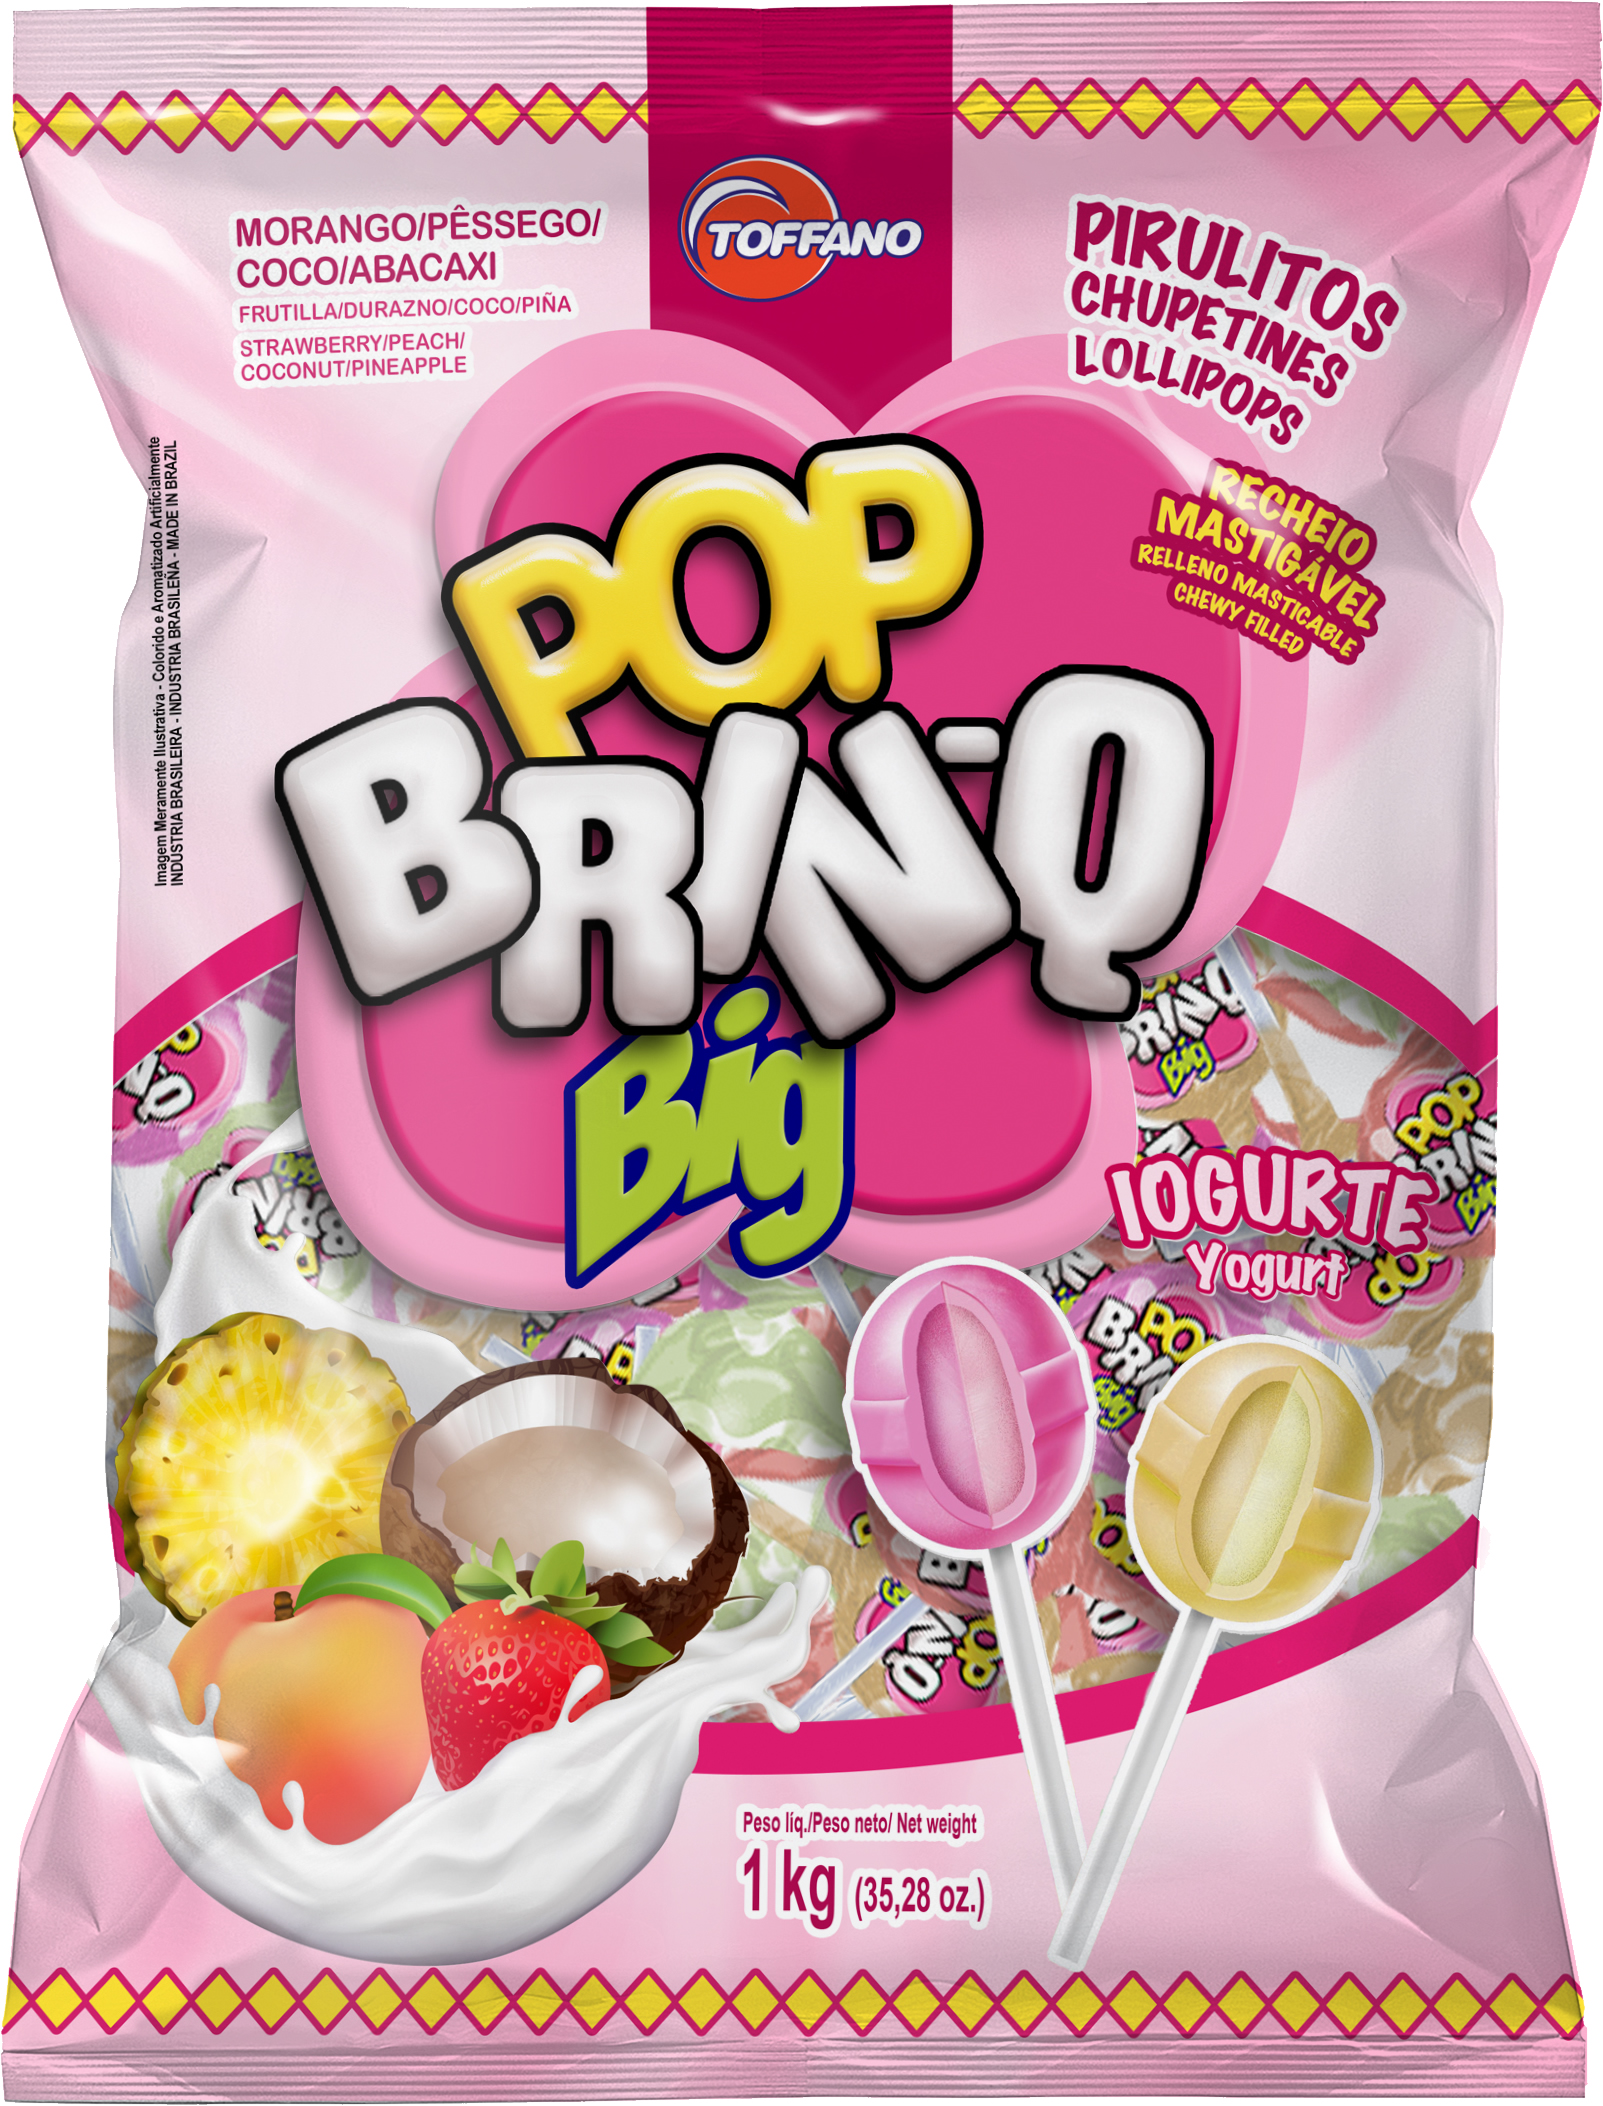 Pirulito Pop Brinq Big Iogurte